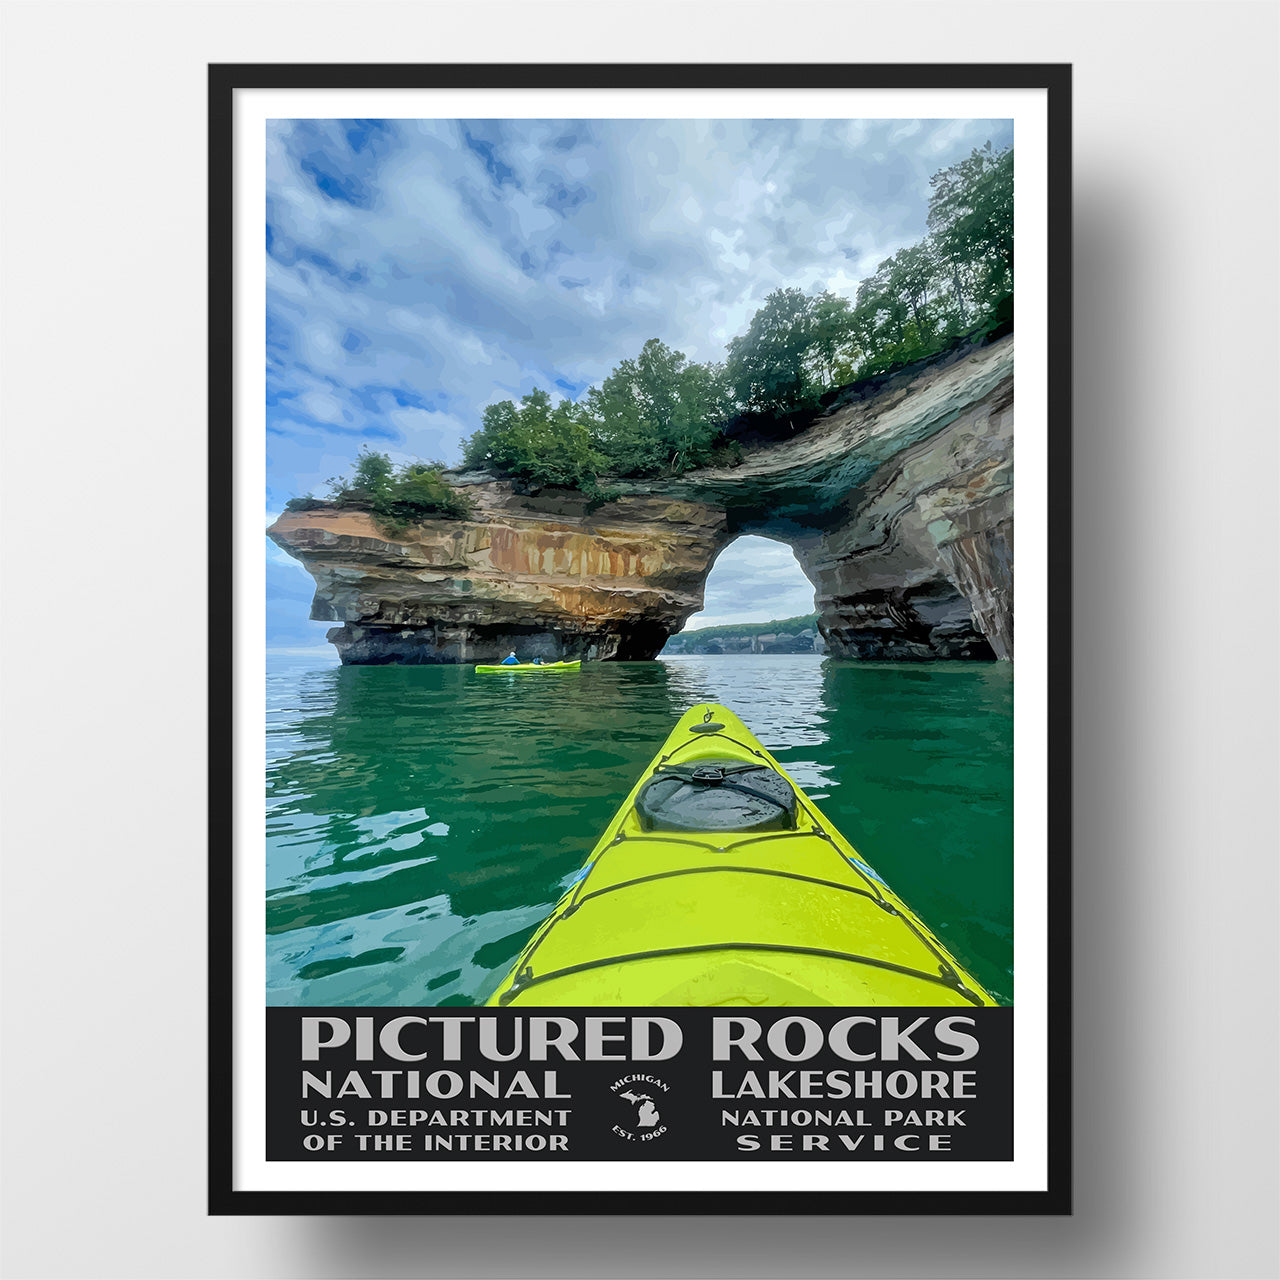 Pictured Rocks National Lakeshore Poster-WPA (Kayaking)